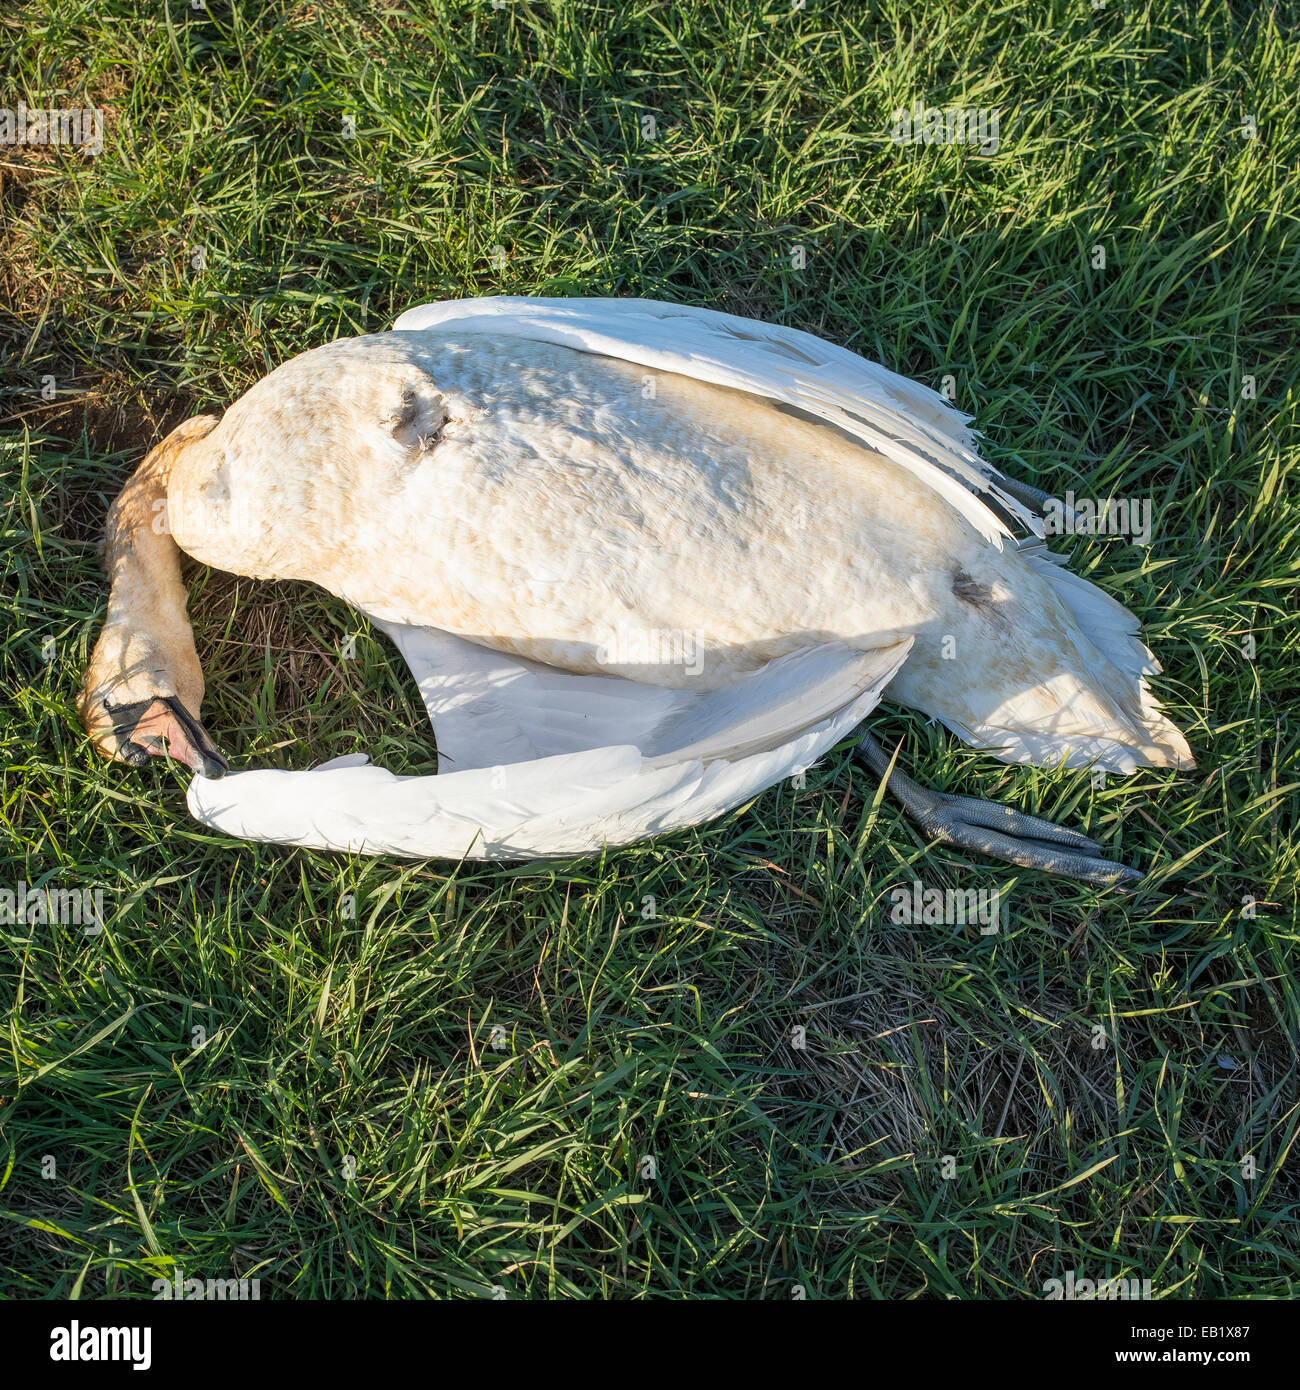 Dead Cygne muet sur l'herbe - Cygnus olor Banque D'Images